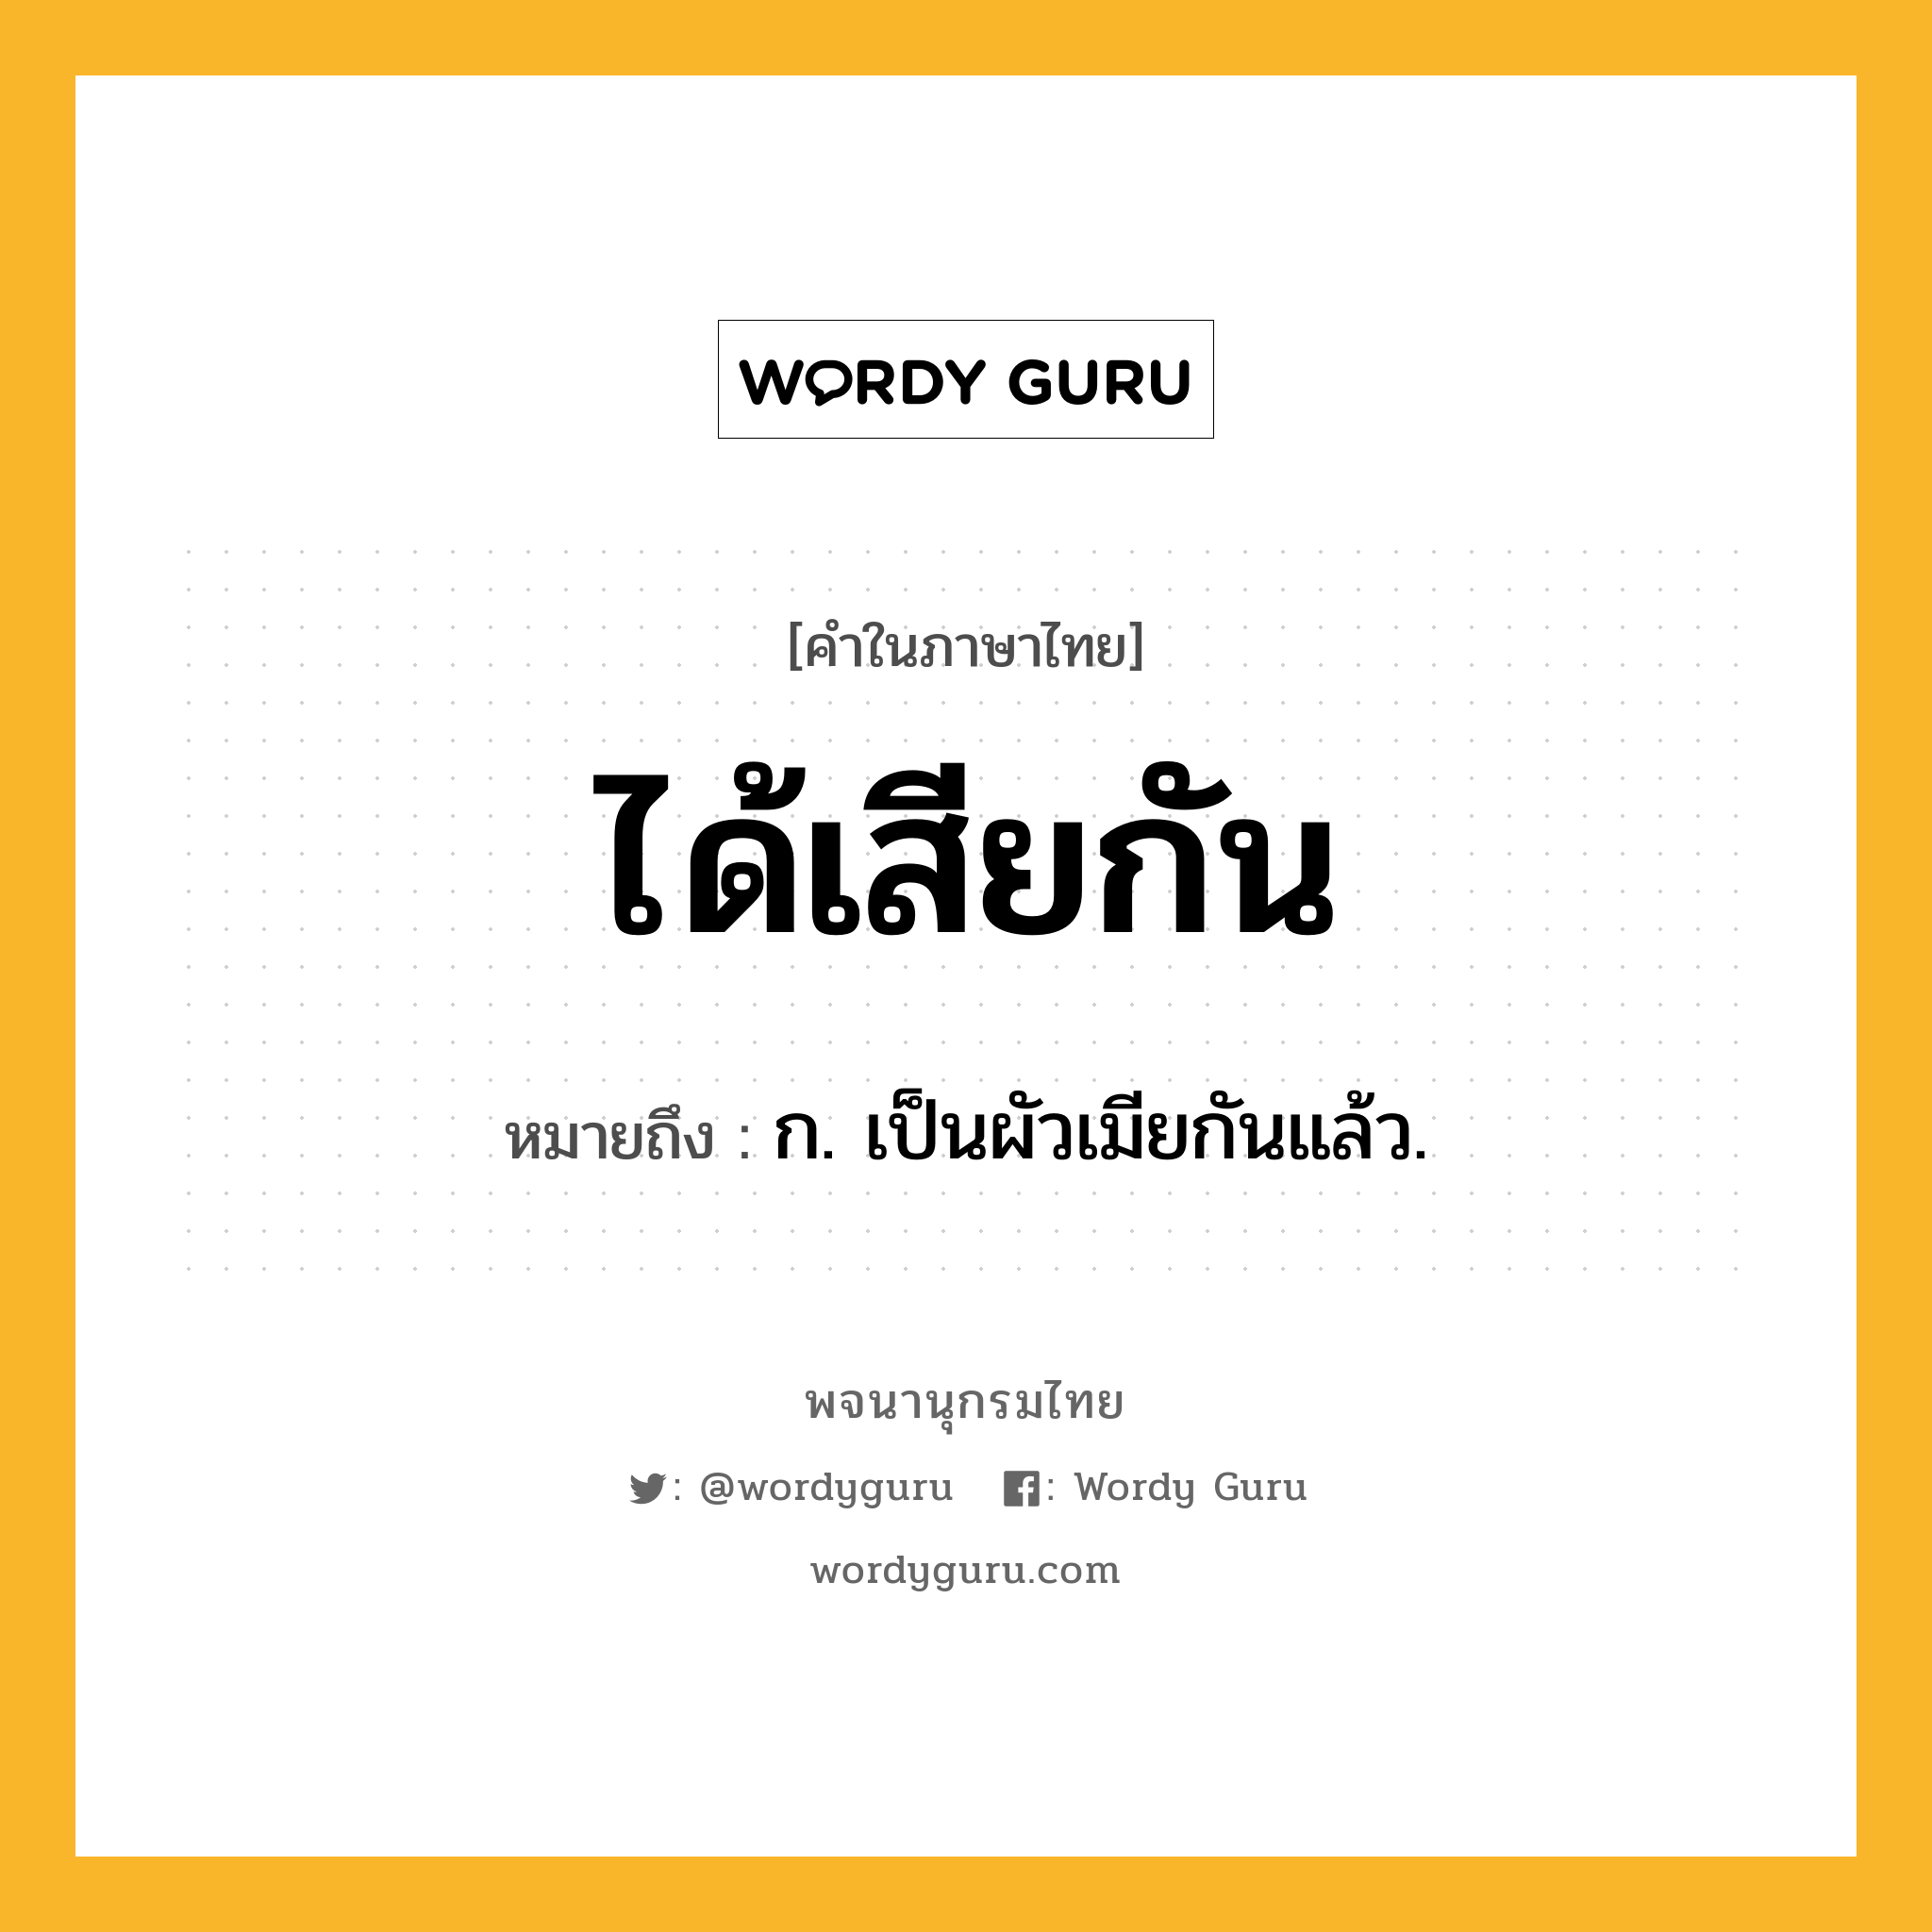 ได้เสียกัน หมายถึงอะไร?, คำในภาษาไทย ได้เสียกัน หมายถึง ก. เป็นผัวเมียกันแล้ว.